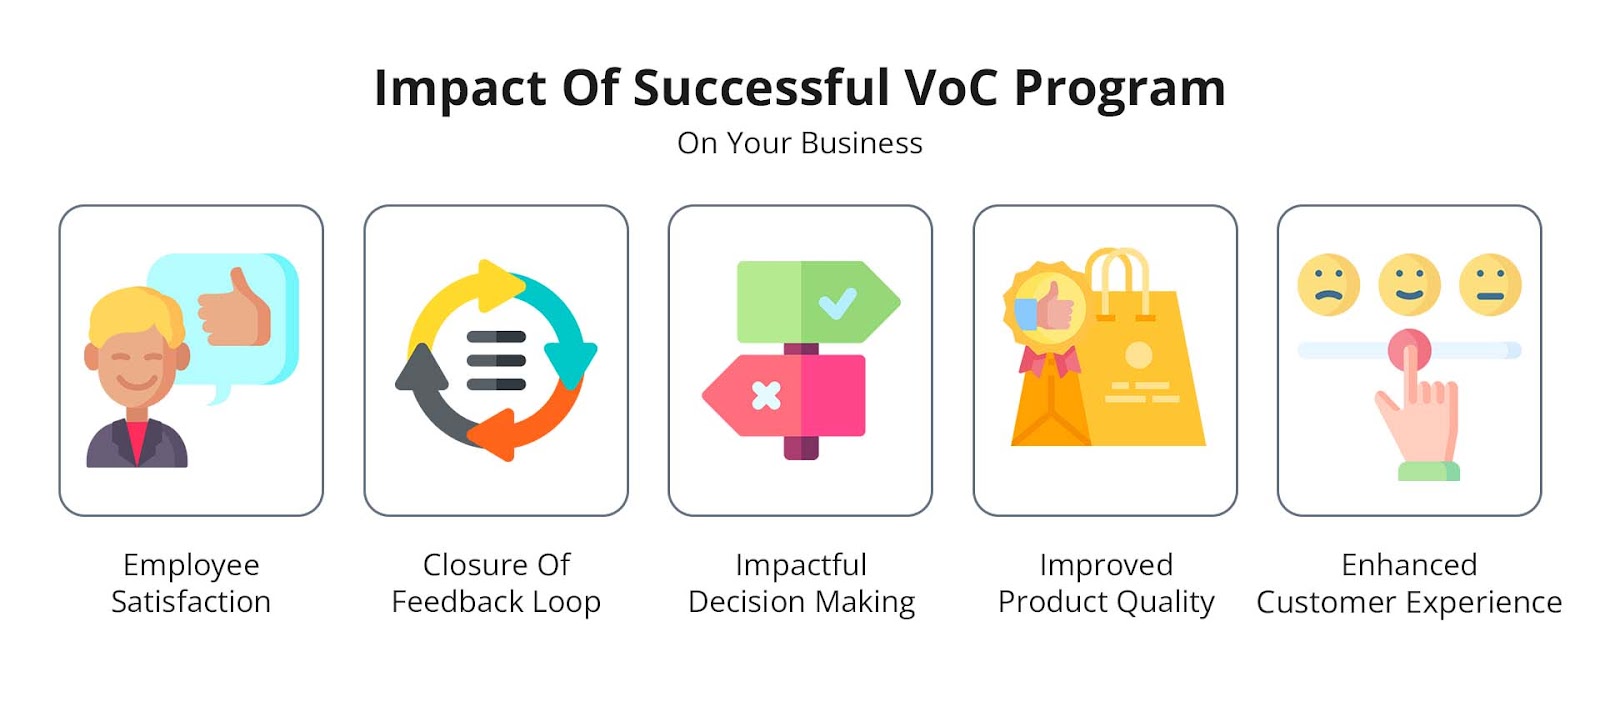 Impact Of Successful VoC Program